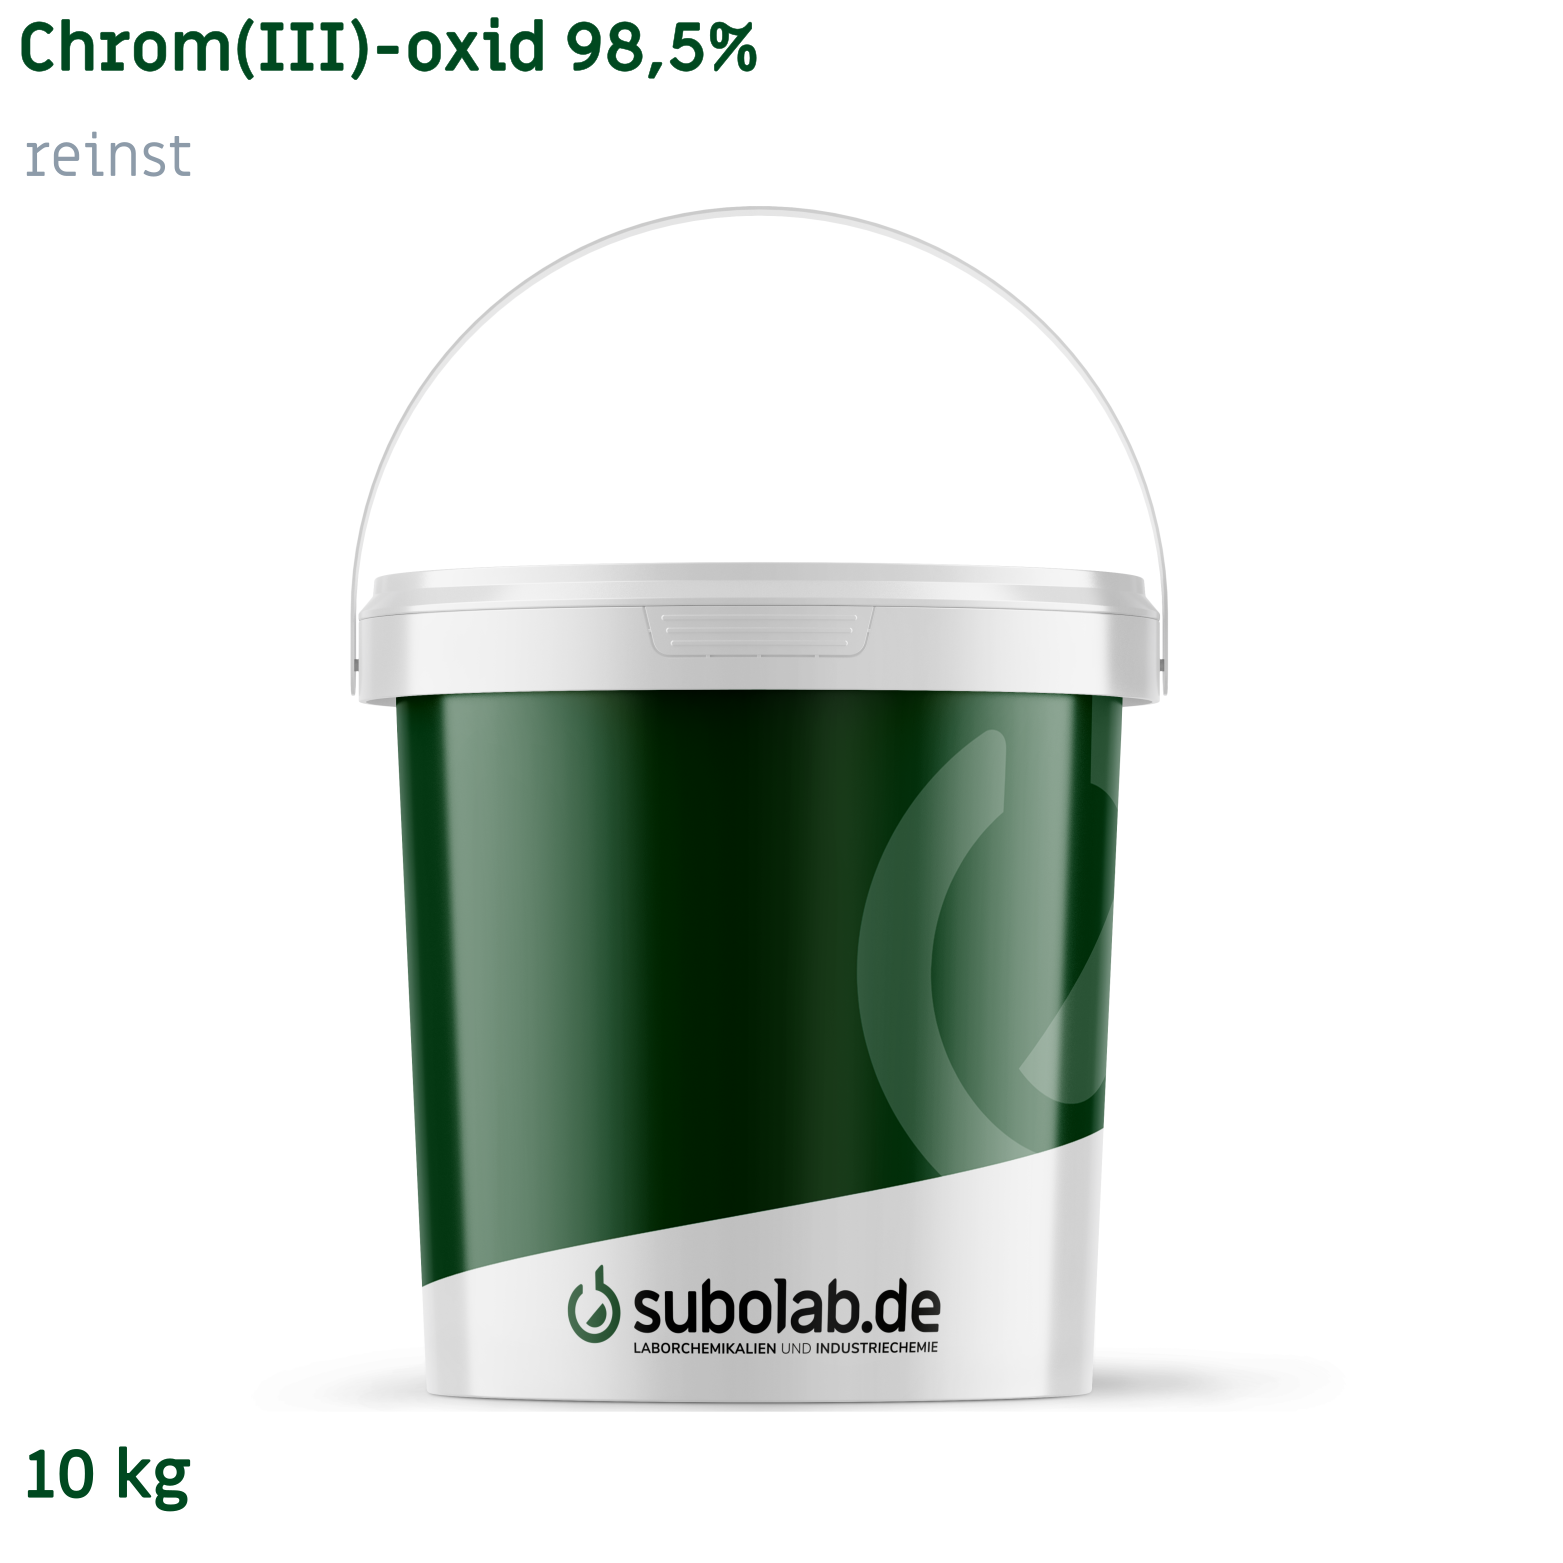 Bild von Chrom(III)-oxid 98,5% reinst (10 kg)